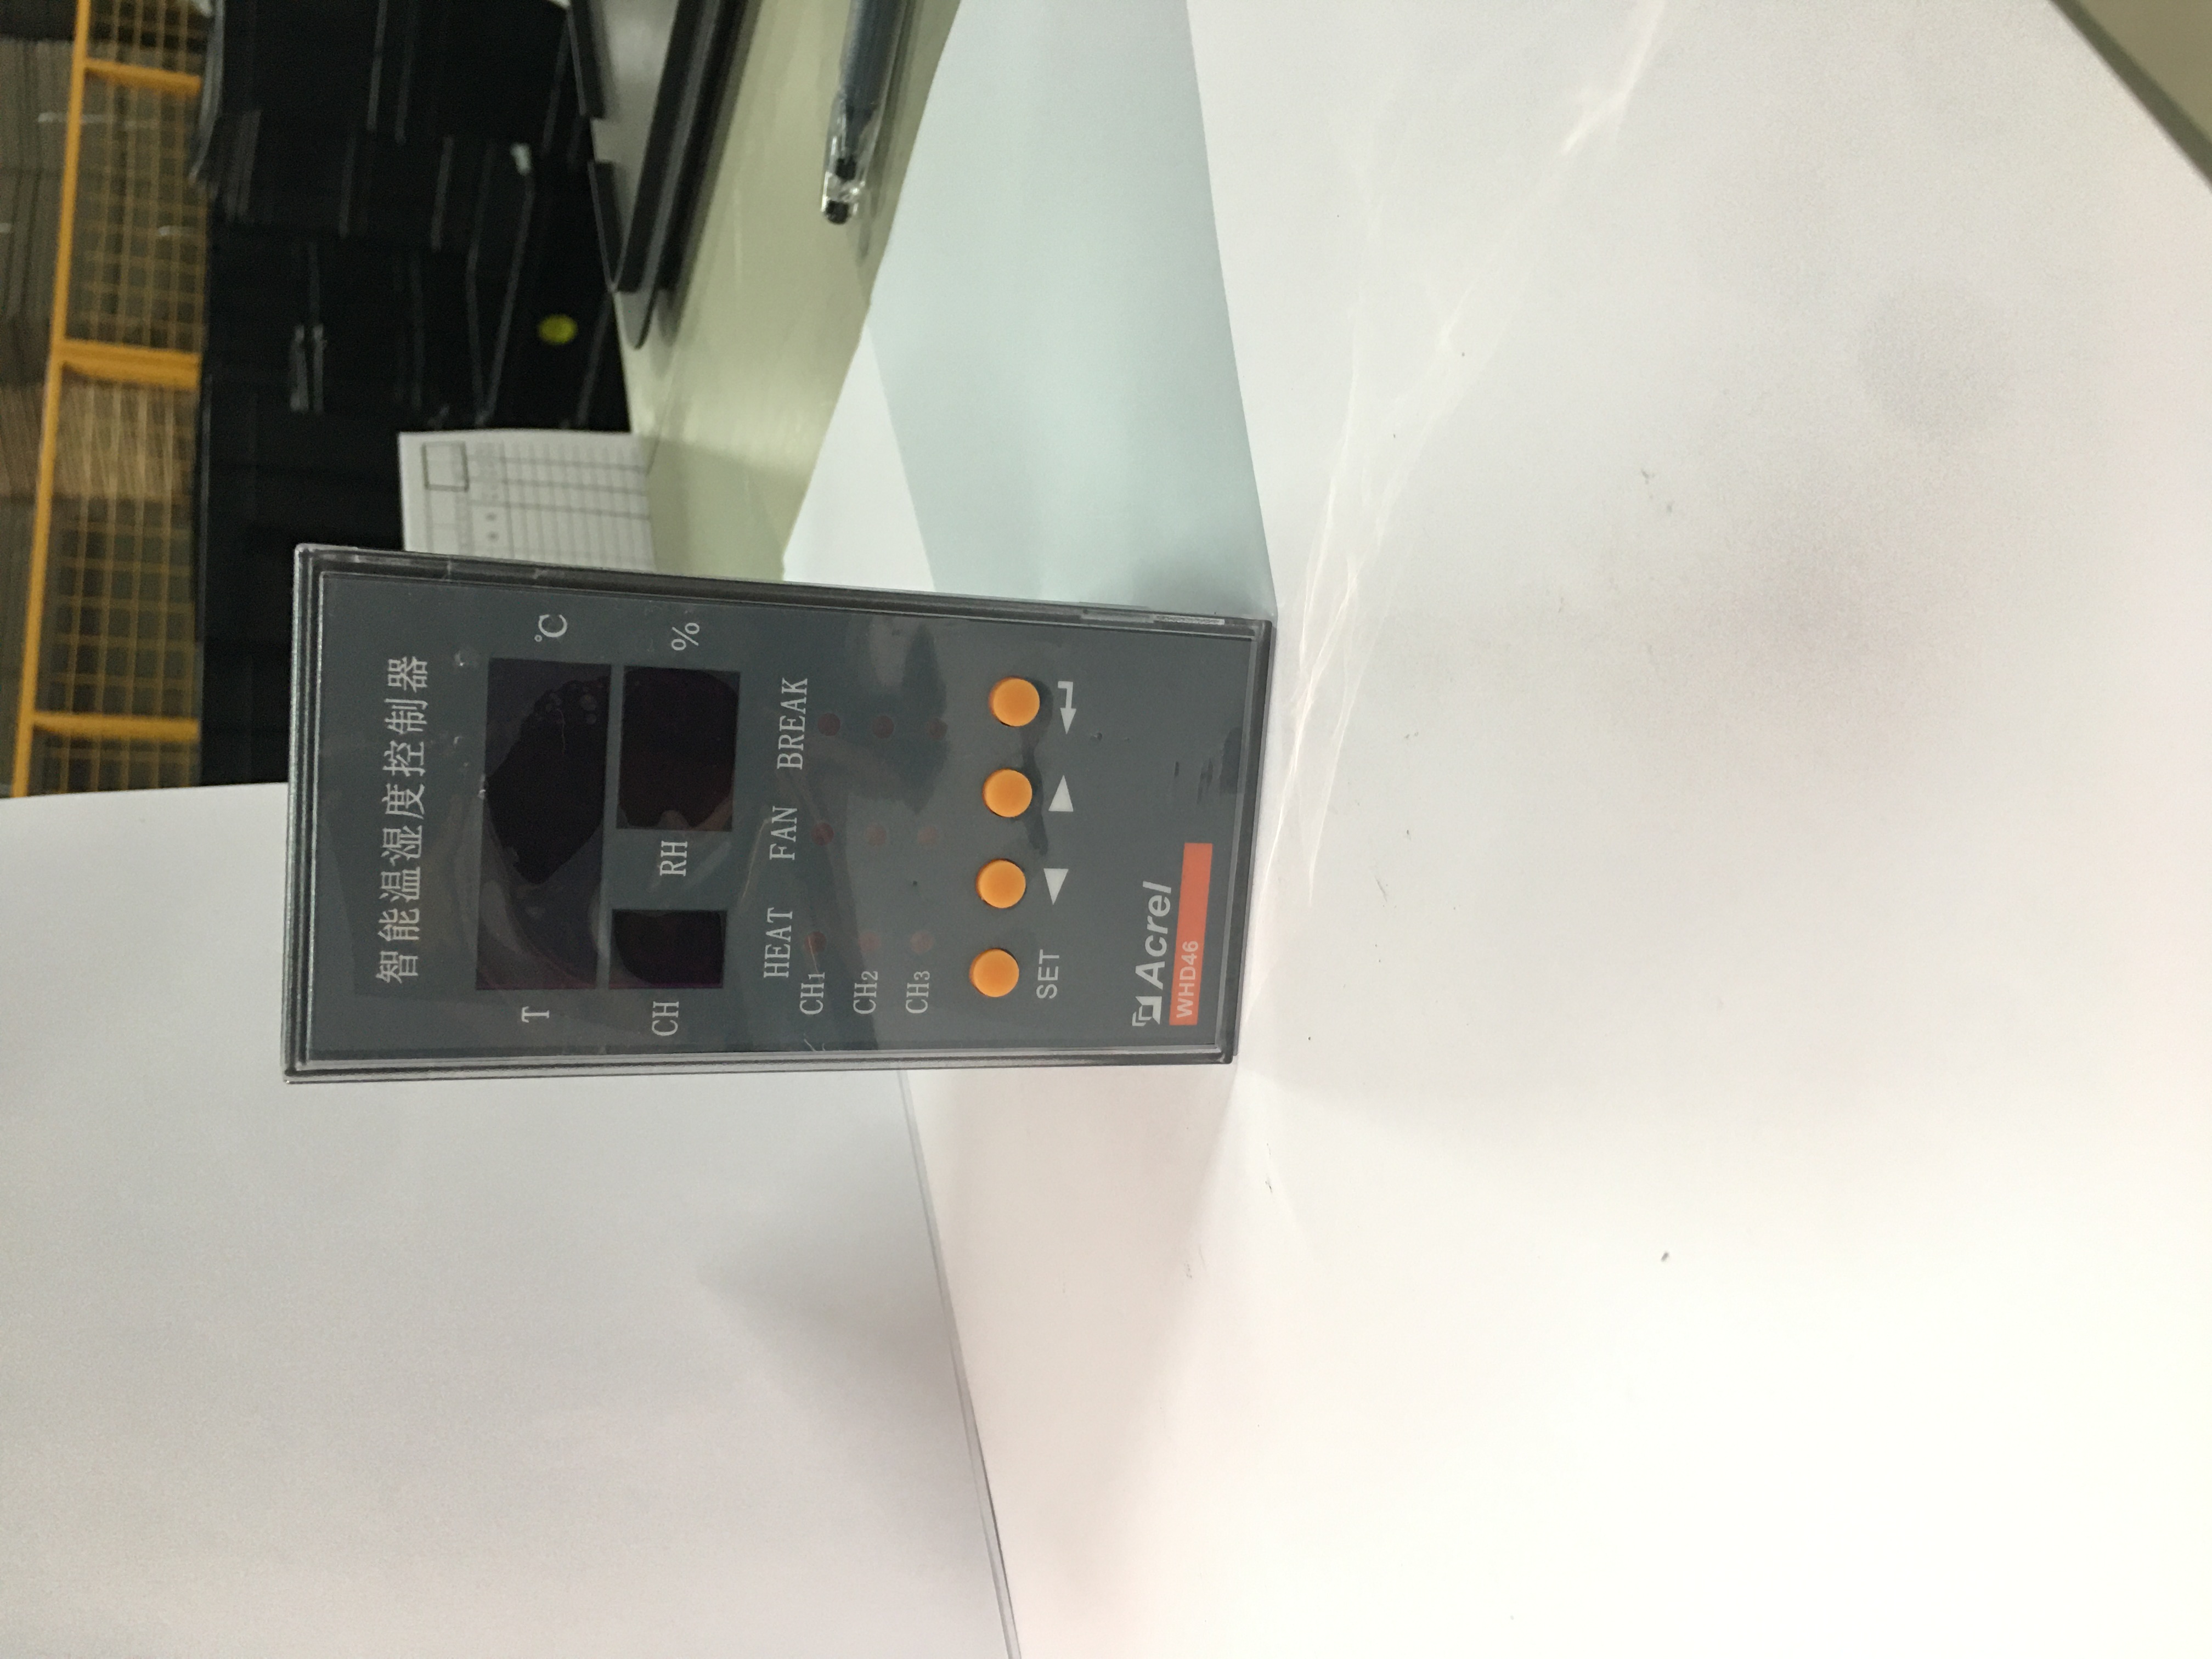 安科瑞 WHD-22/C 智能型溫濕度控制器 環網柜溫濕度調節控制 測量并顯示控制3路溫度、3路濕度 1路RS485通訊 除濕升溫